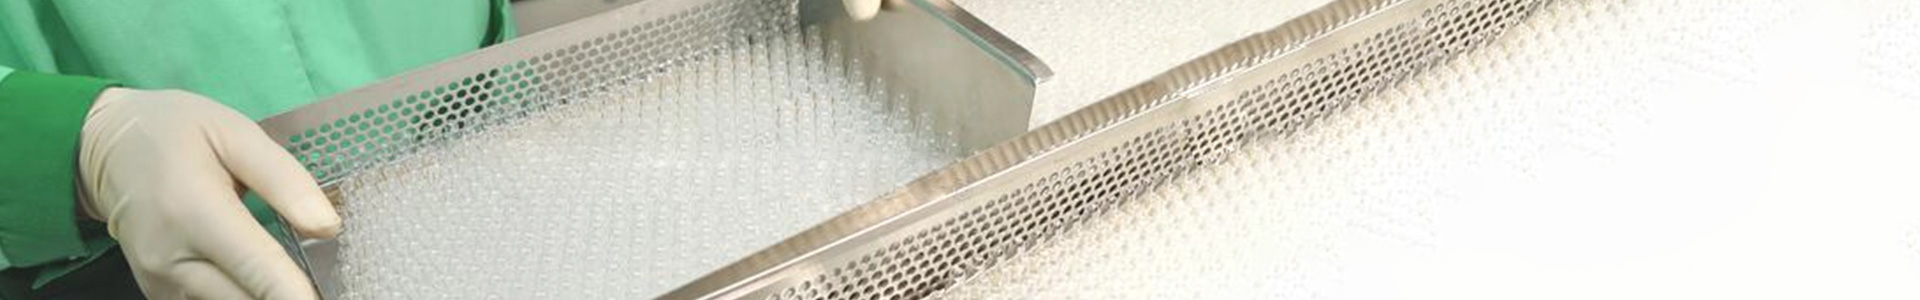 autoclave steriliztion glass ampoule sterilizer